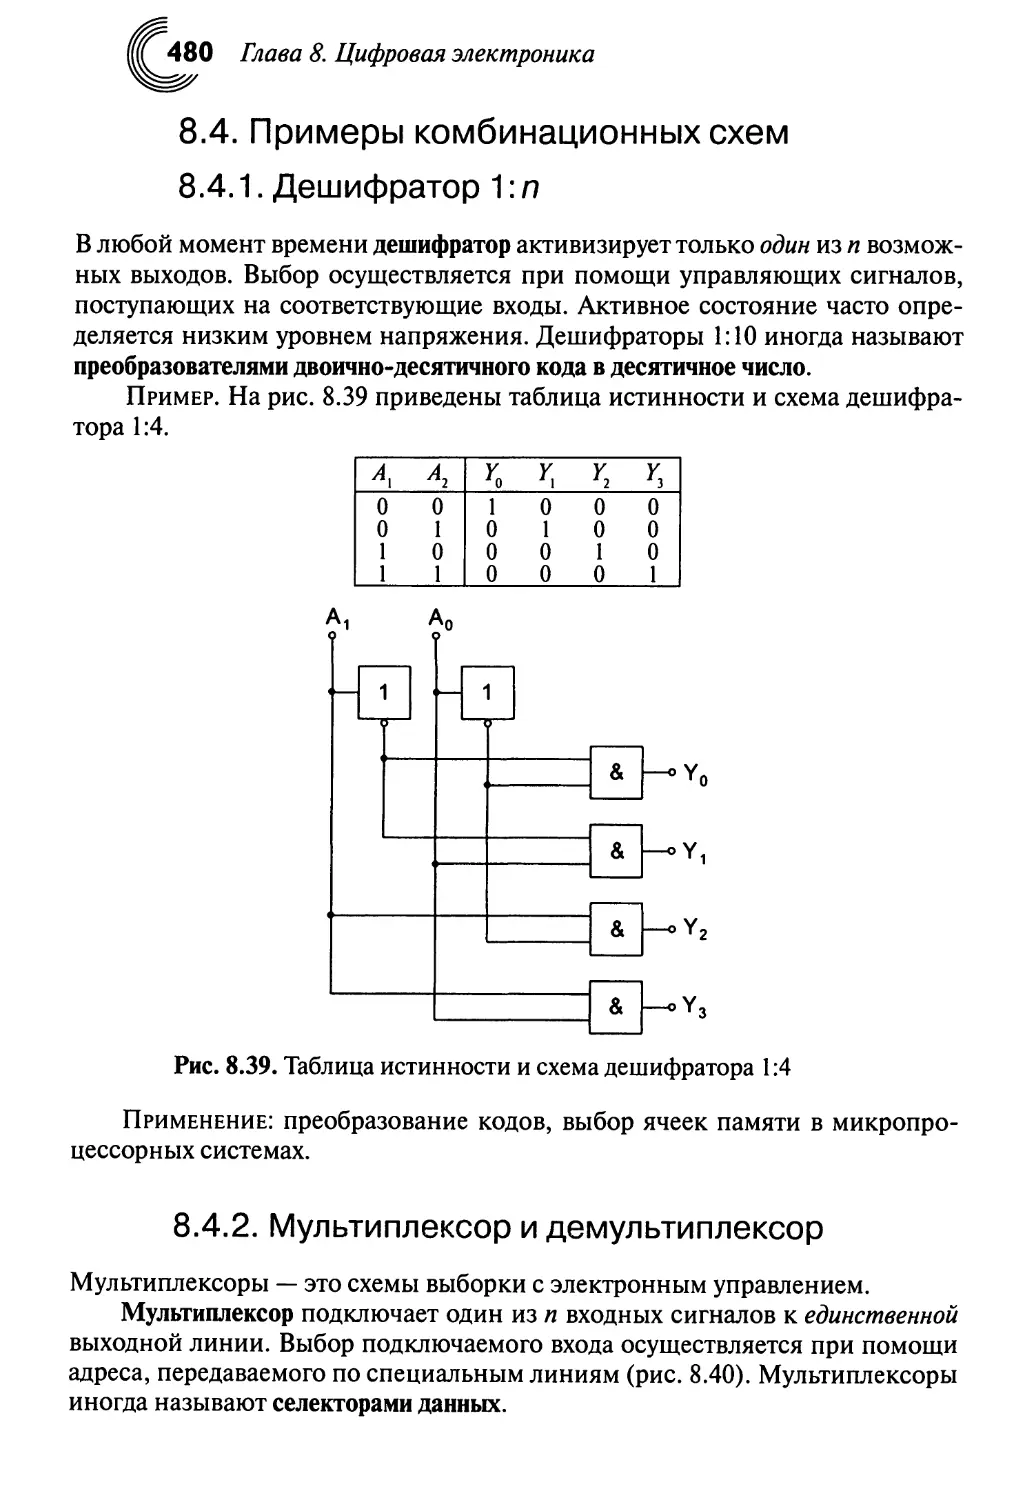 8.4. Примеры комбинационных схем
8.4.2. Мультиплексор и демультиплексор